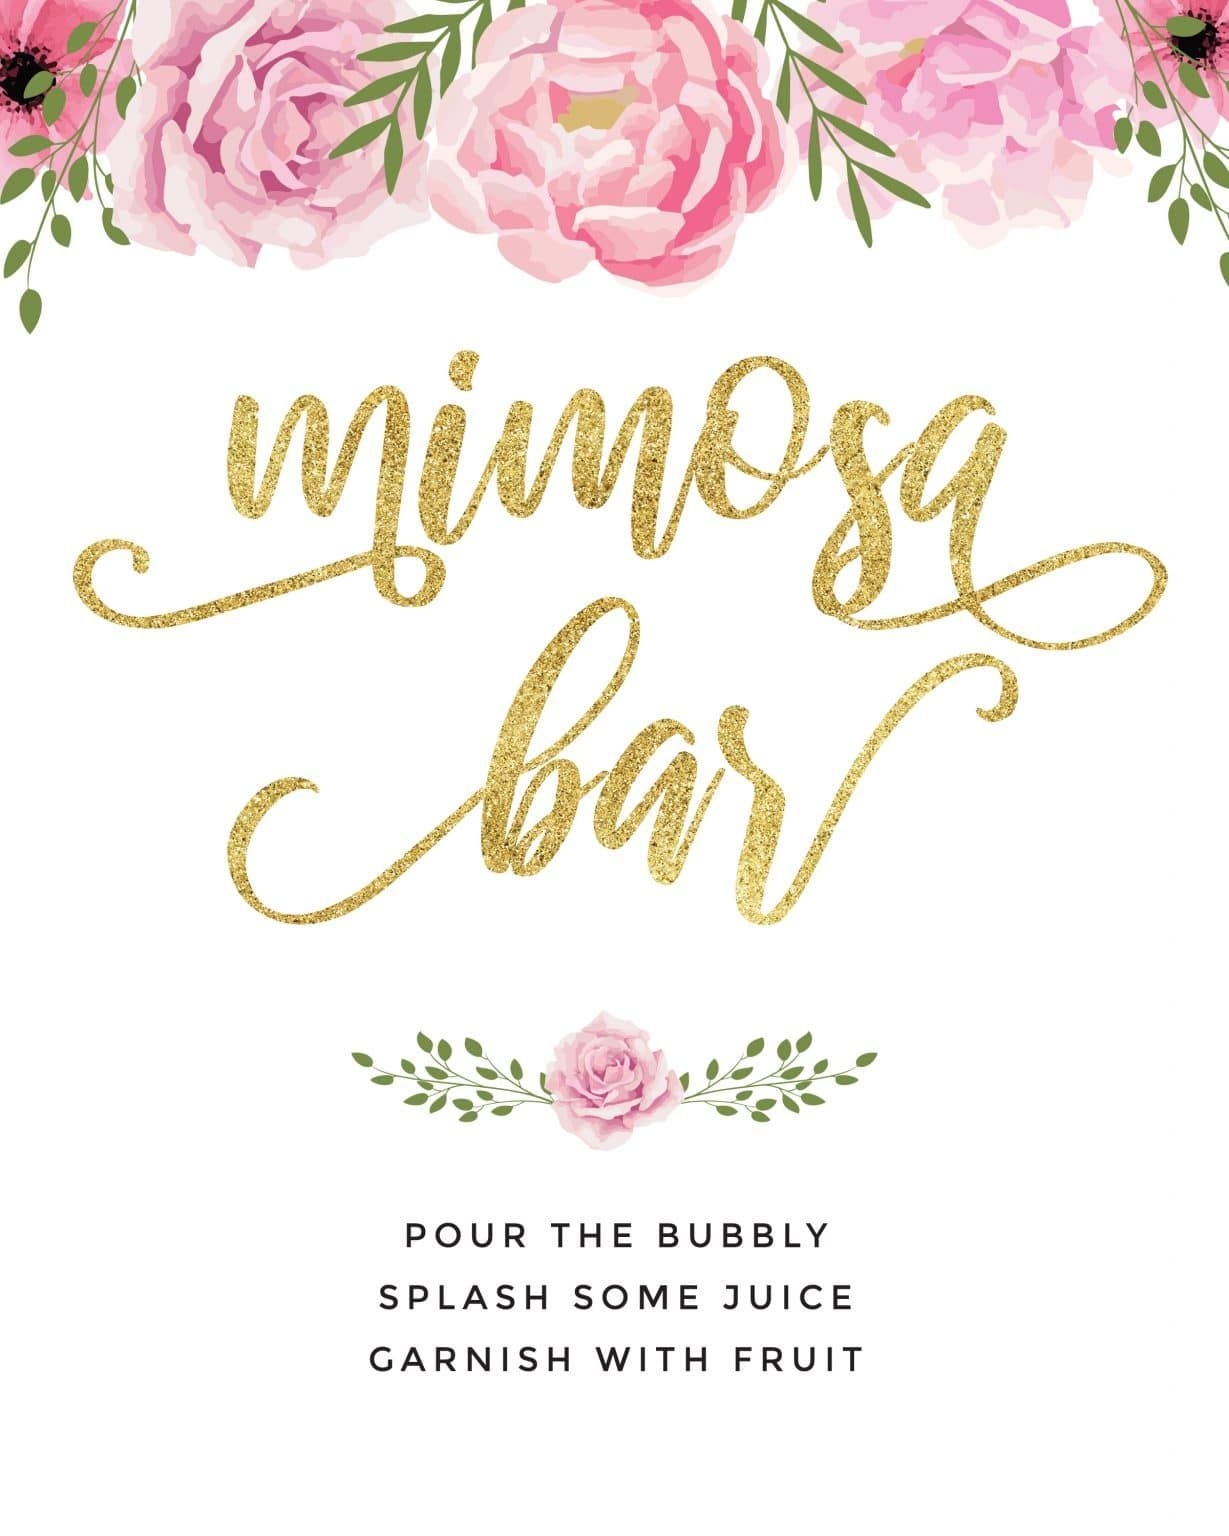 Beautiful Mimosa Bar Sign And Free Printables To Impress Mimosa Bar Sign Mimosa Bar Bridal Shower Mimosa Bar